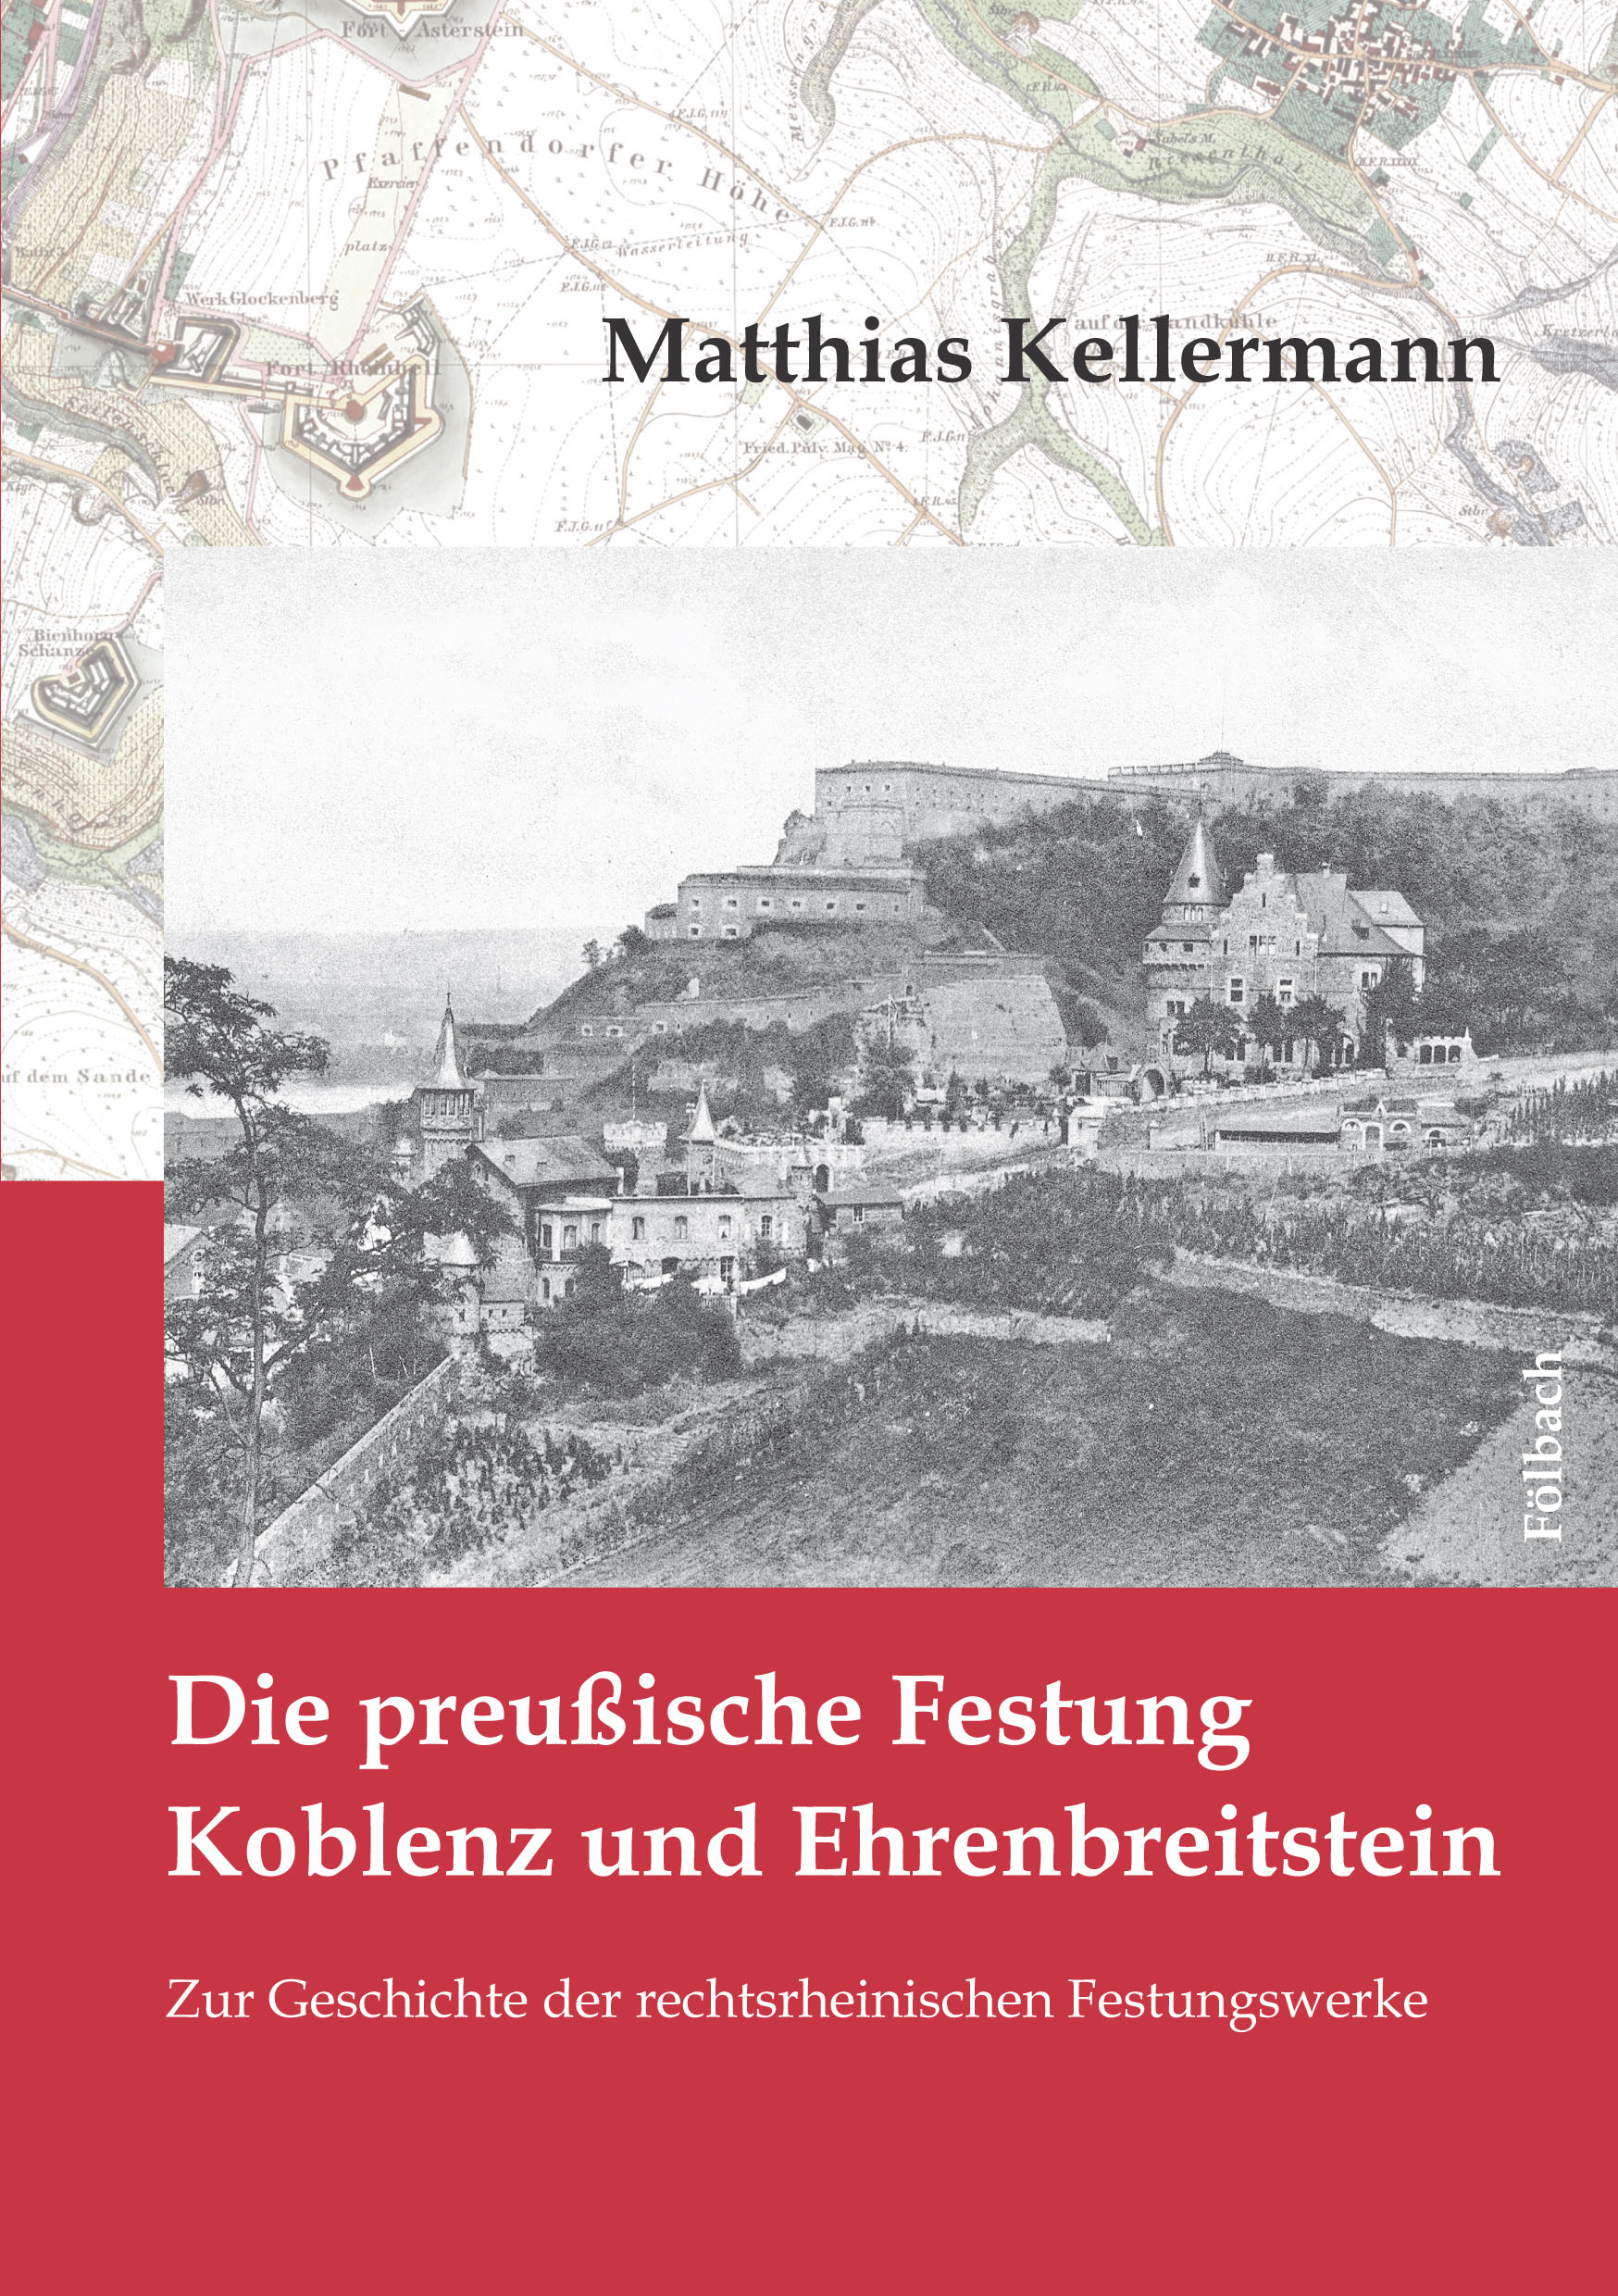 Matthias Kellermann